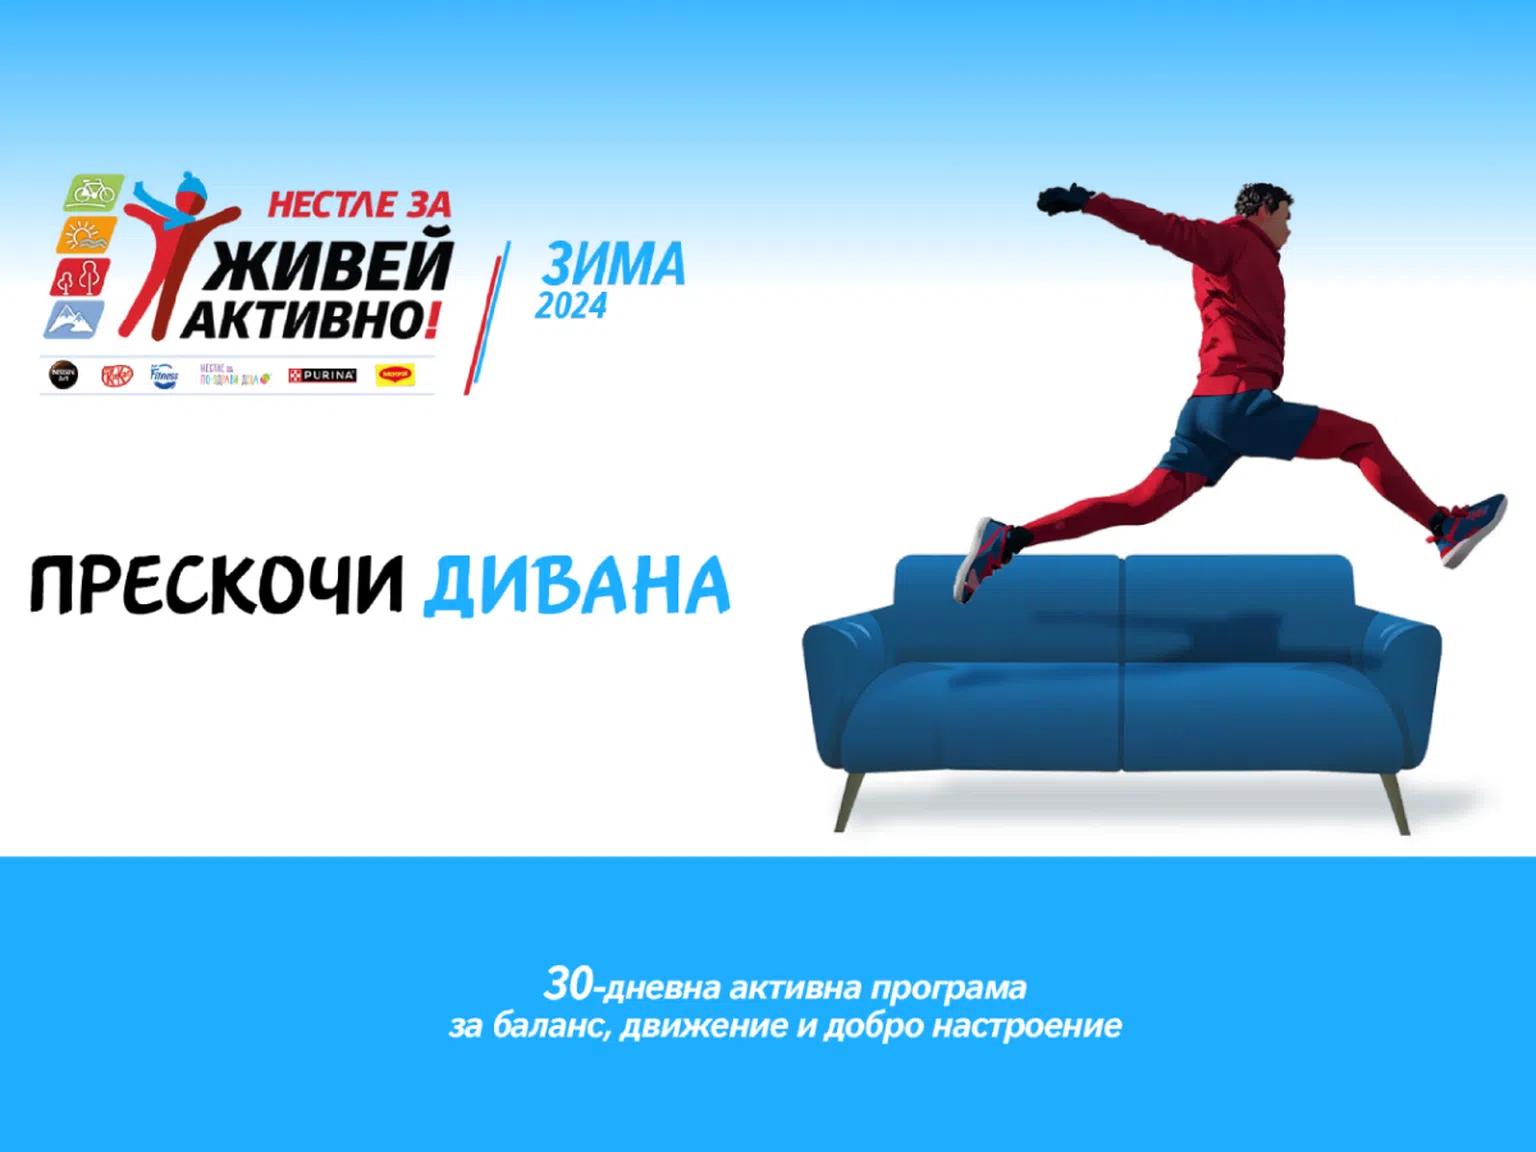 Прескочи дивана!: Активна програма за баланс, движение и добро настроение